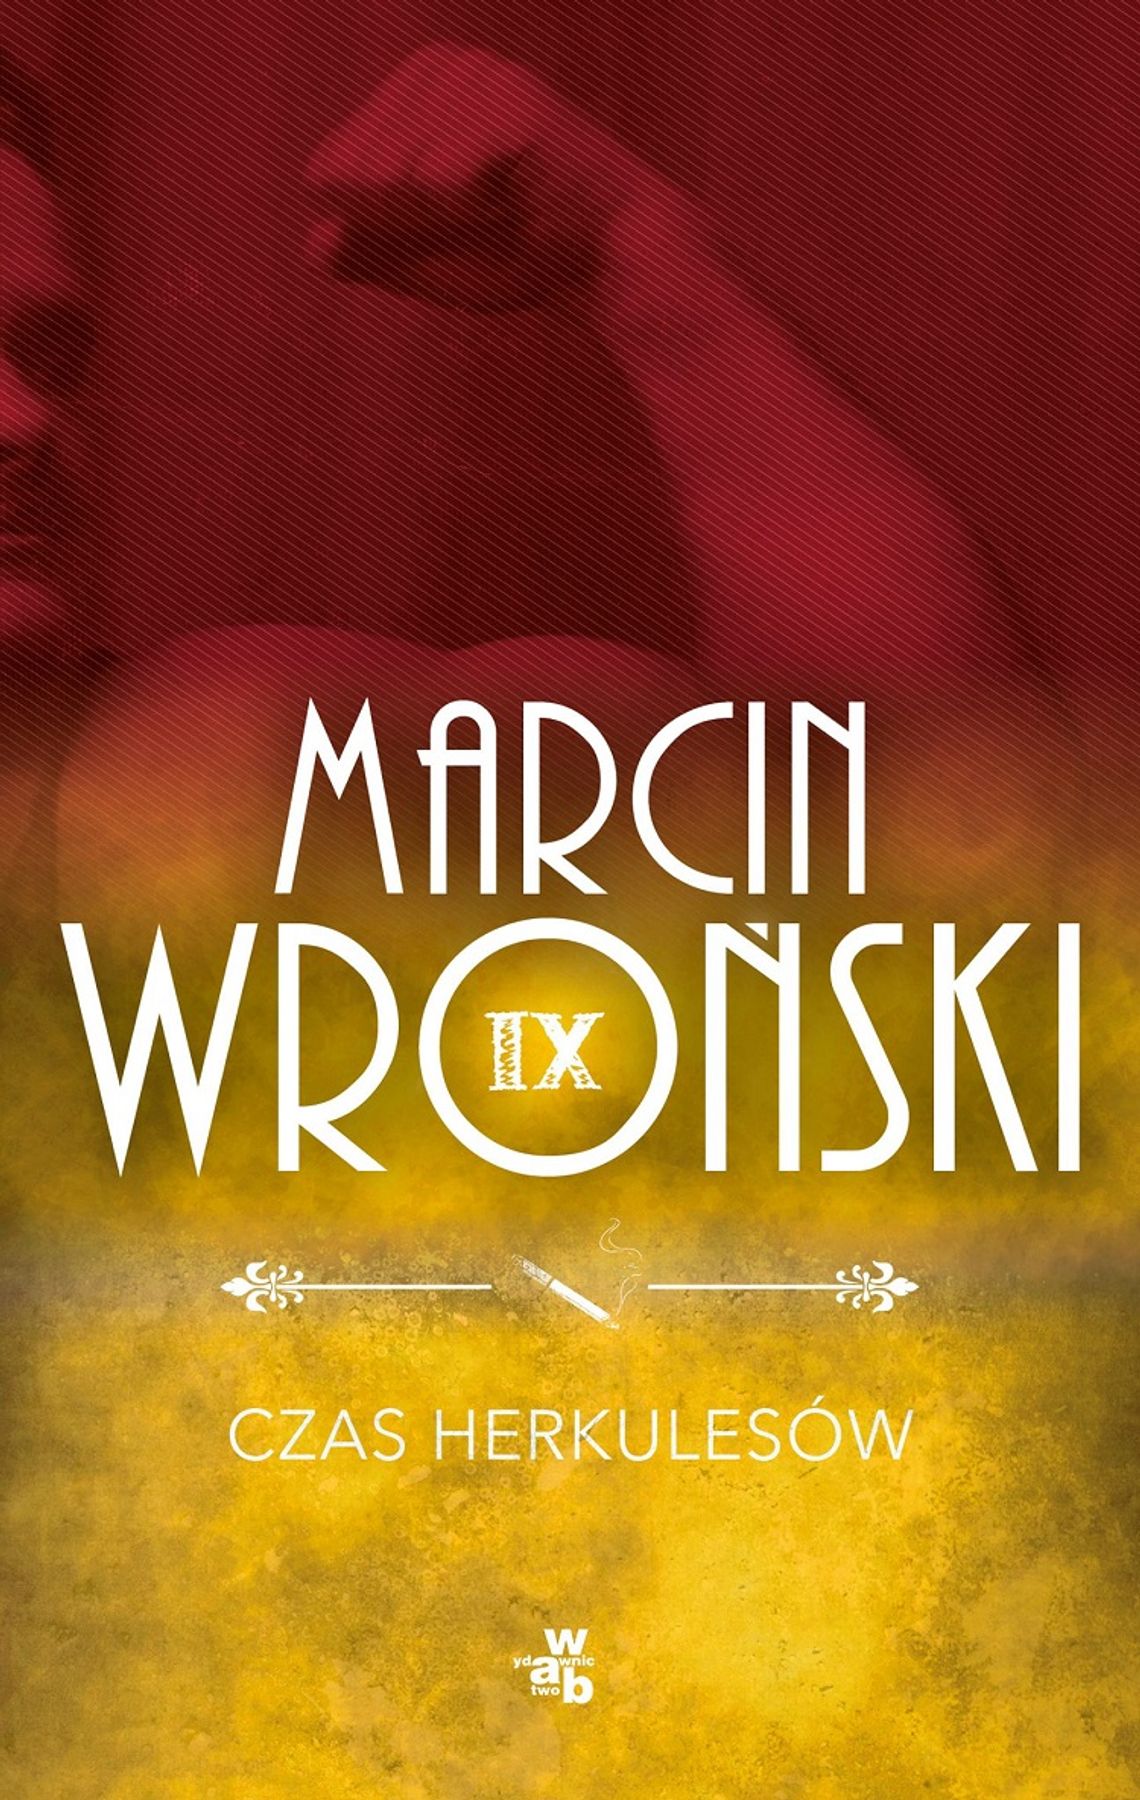 Książka Marcina Wrońskiego o przedwojennym Chełmie już niedługo w sprzedaży!